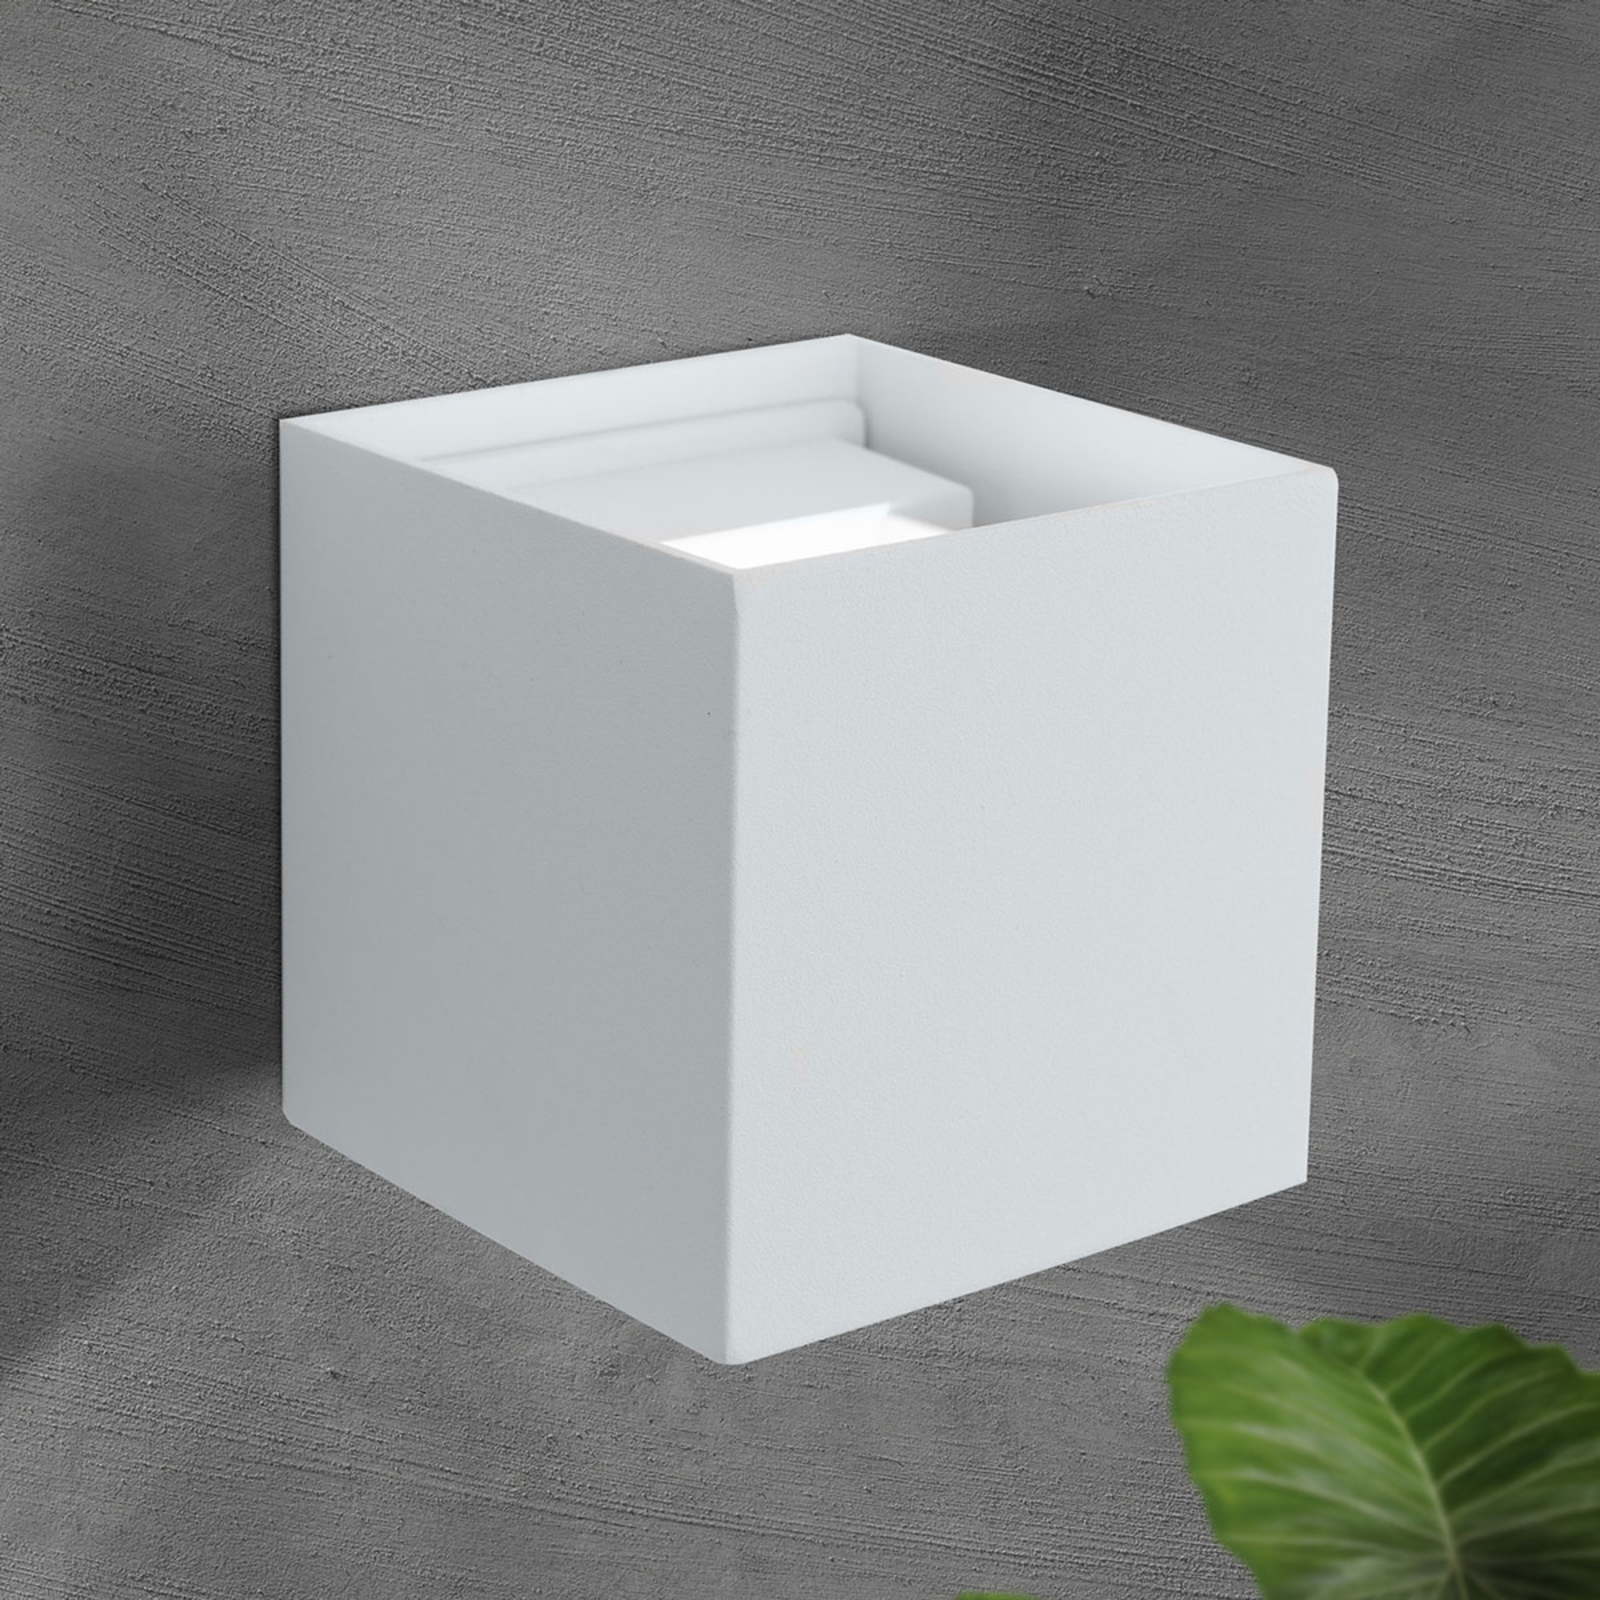 LED-Außenwandleuchte Cube, weiß, Metall, 10 cm, up/down